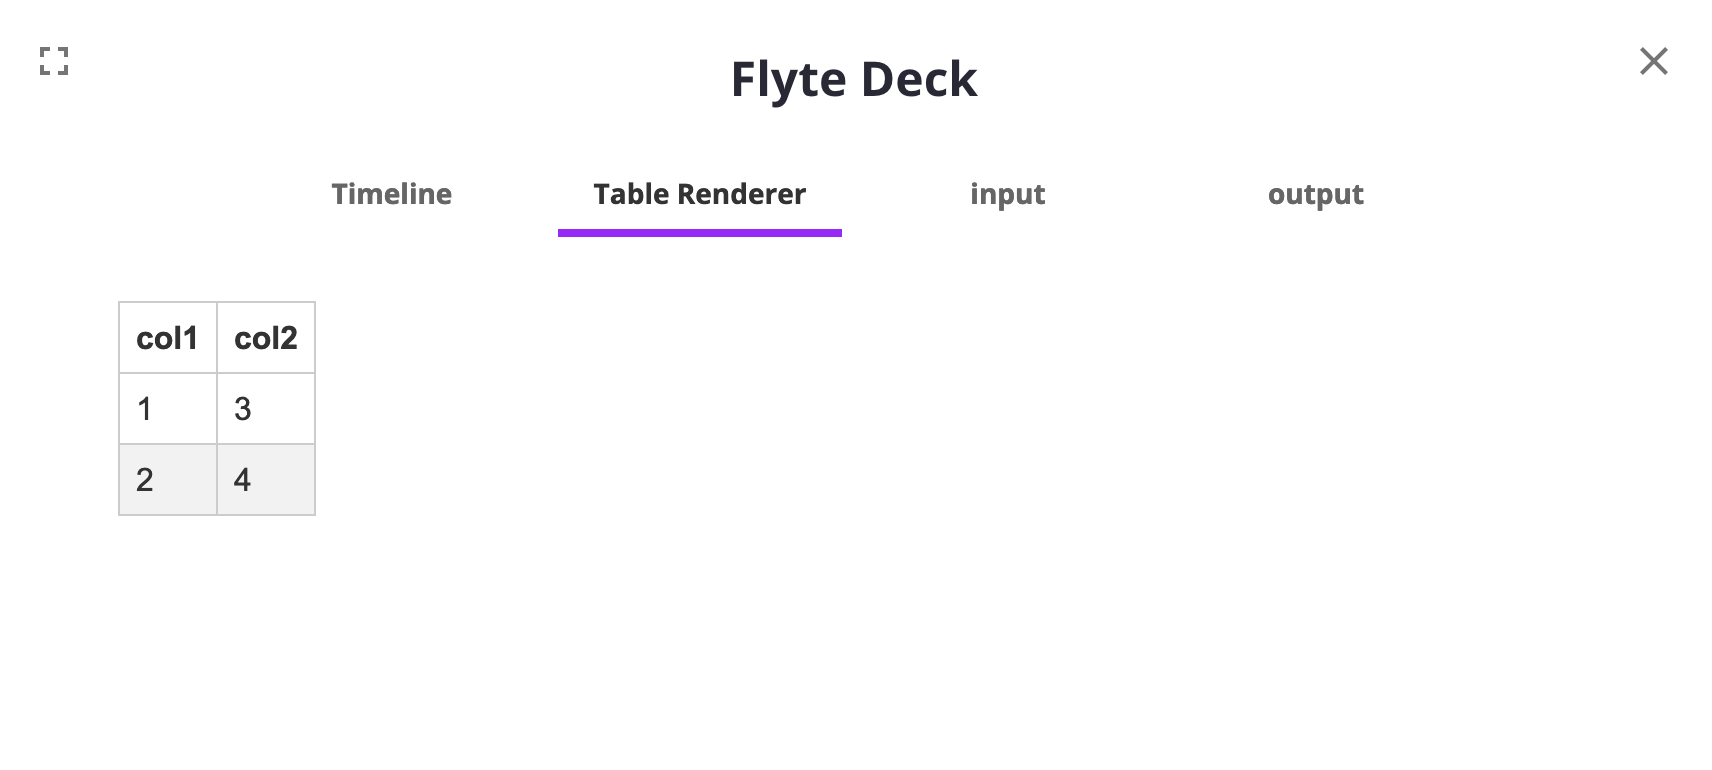 Table renderer